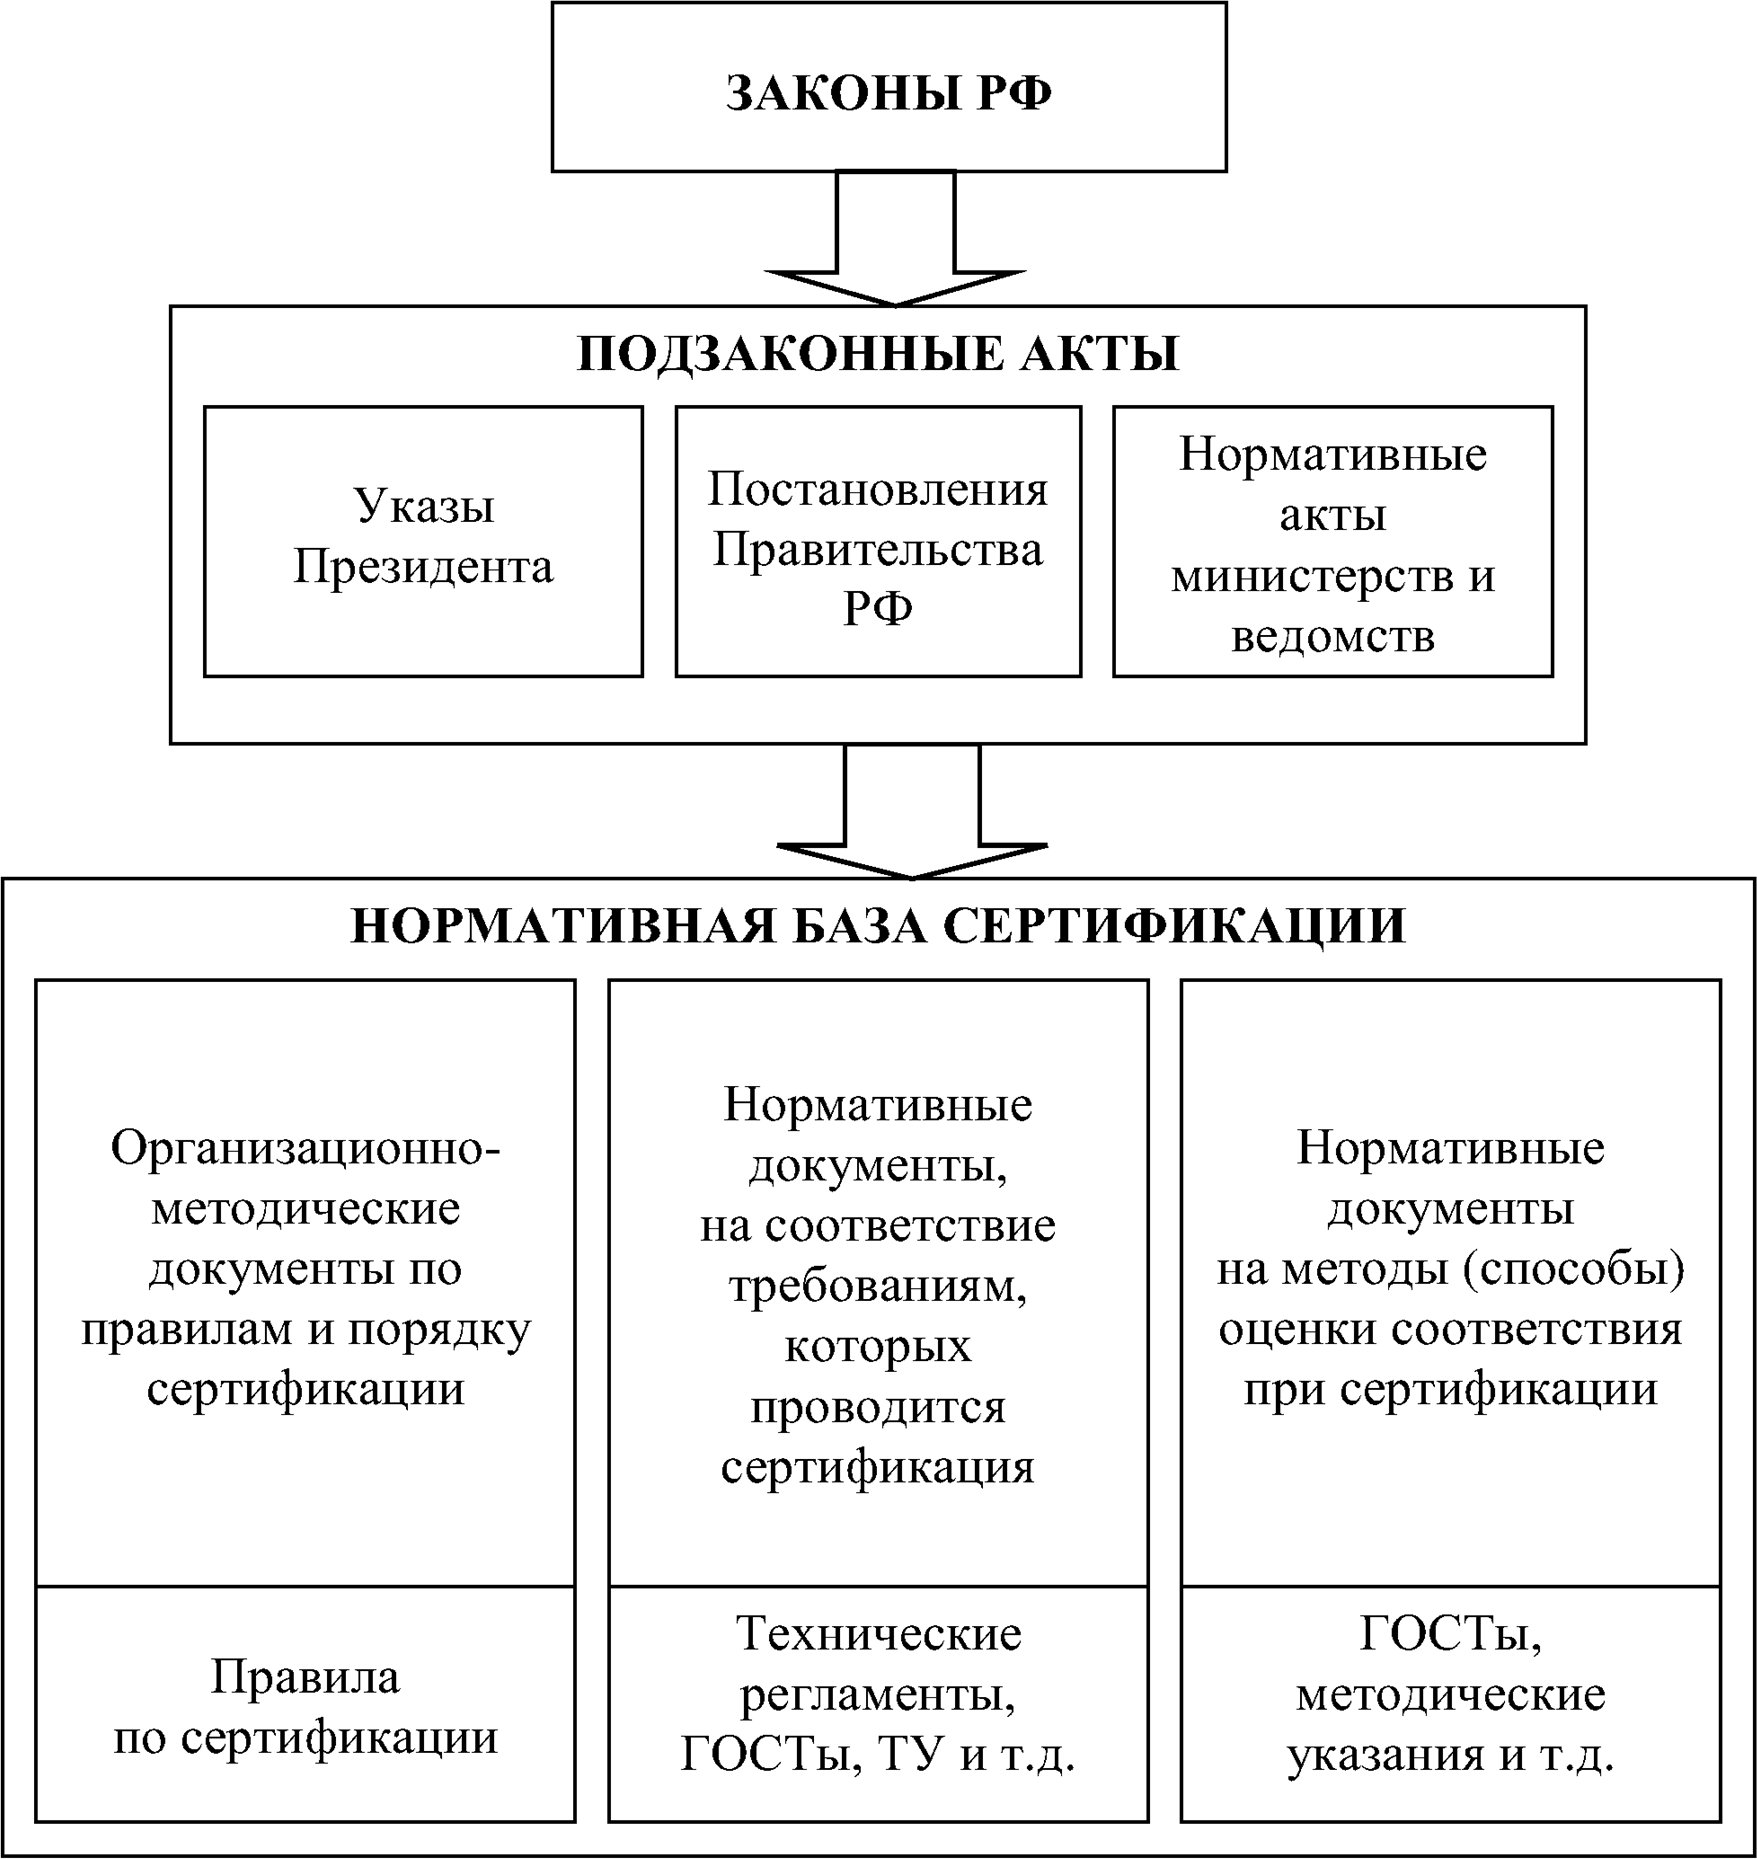 Законодательная и нормативная база сертификации в России